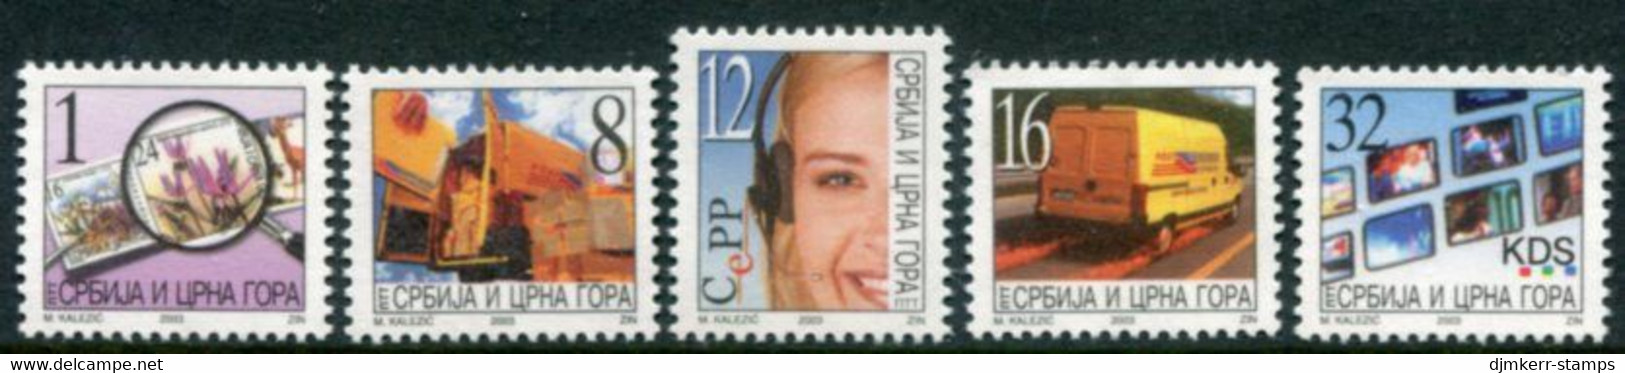 YUGOSLAVIA (Serbia & Montenegro) 2003 Definitive: Postal Services MNH / **  Michel 3133-37 - Nuovi